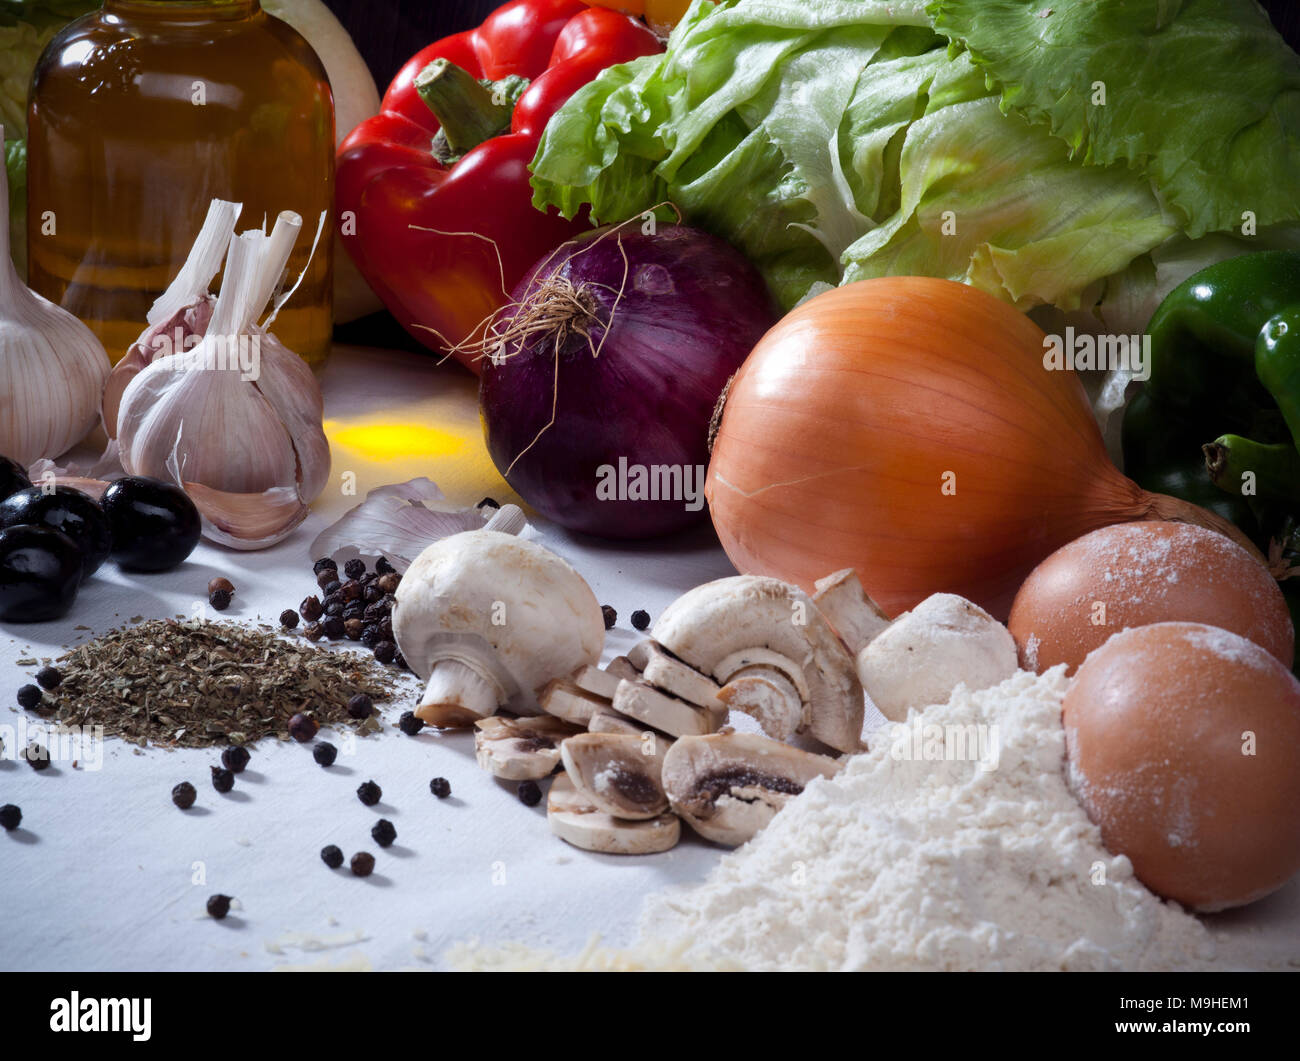 Ortaggi ancora vita composizione con carne, formaggio, uova, spezie, olio di oliva e gli altri ingredienti alimentari Foto Stock